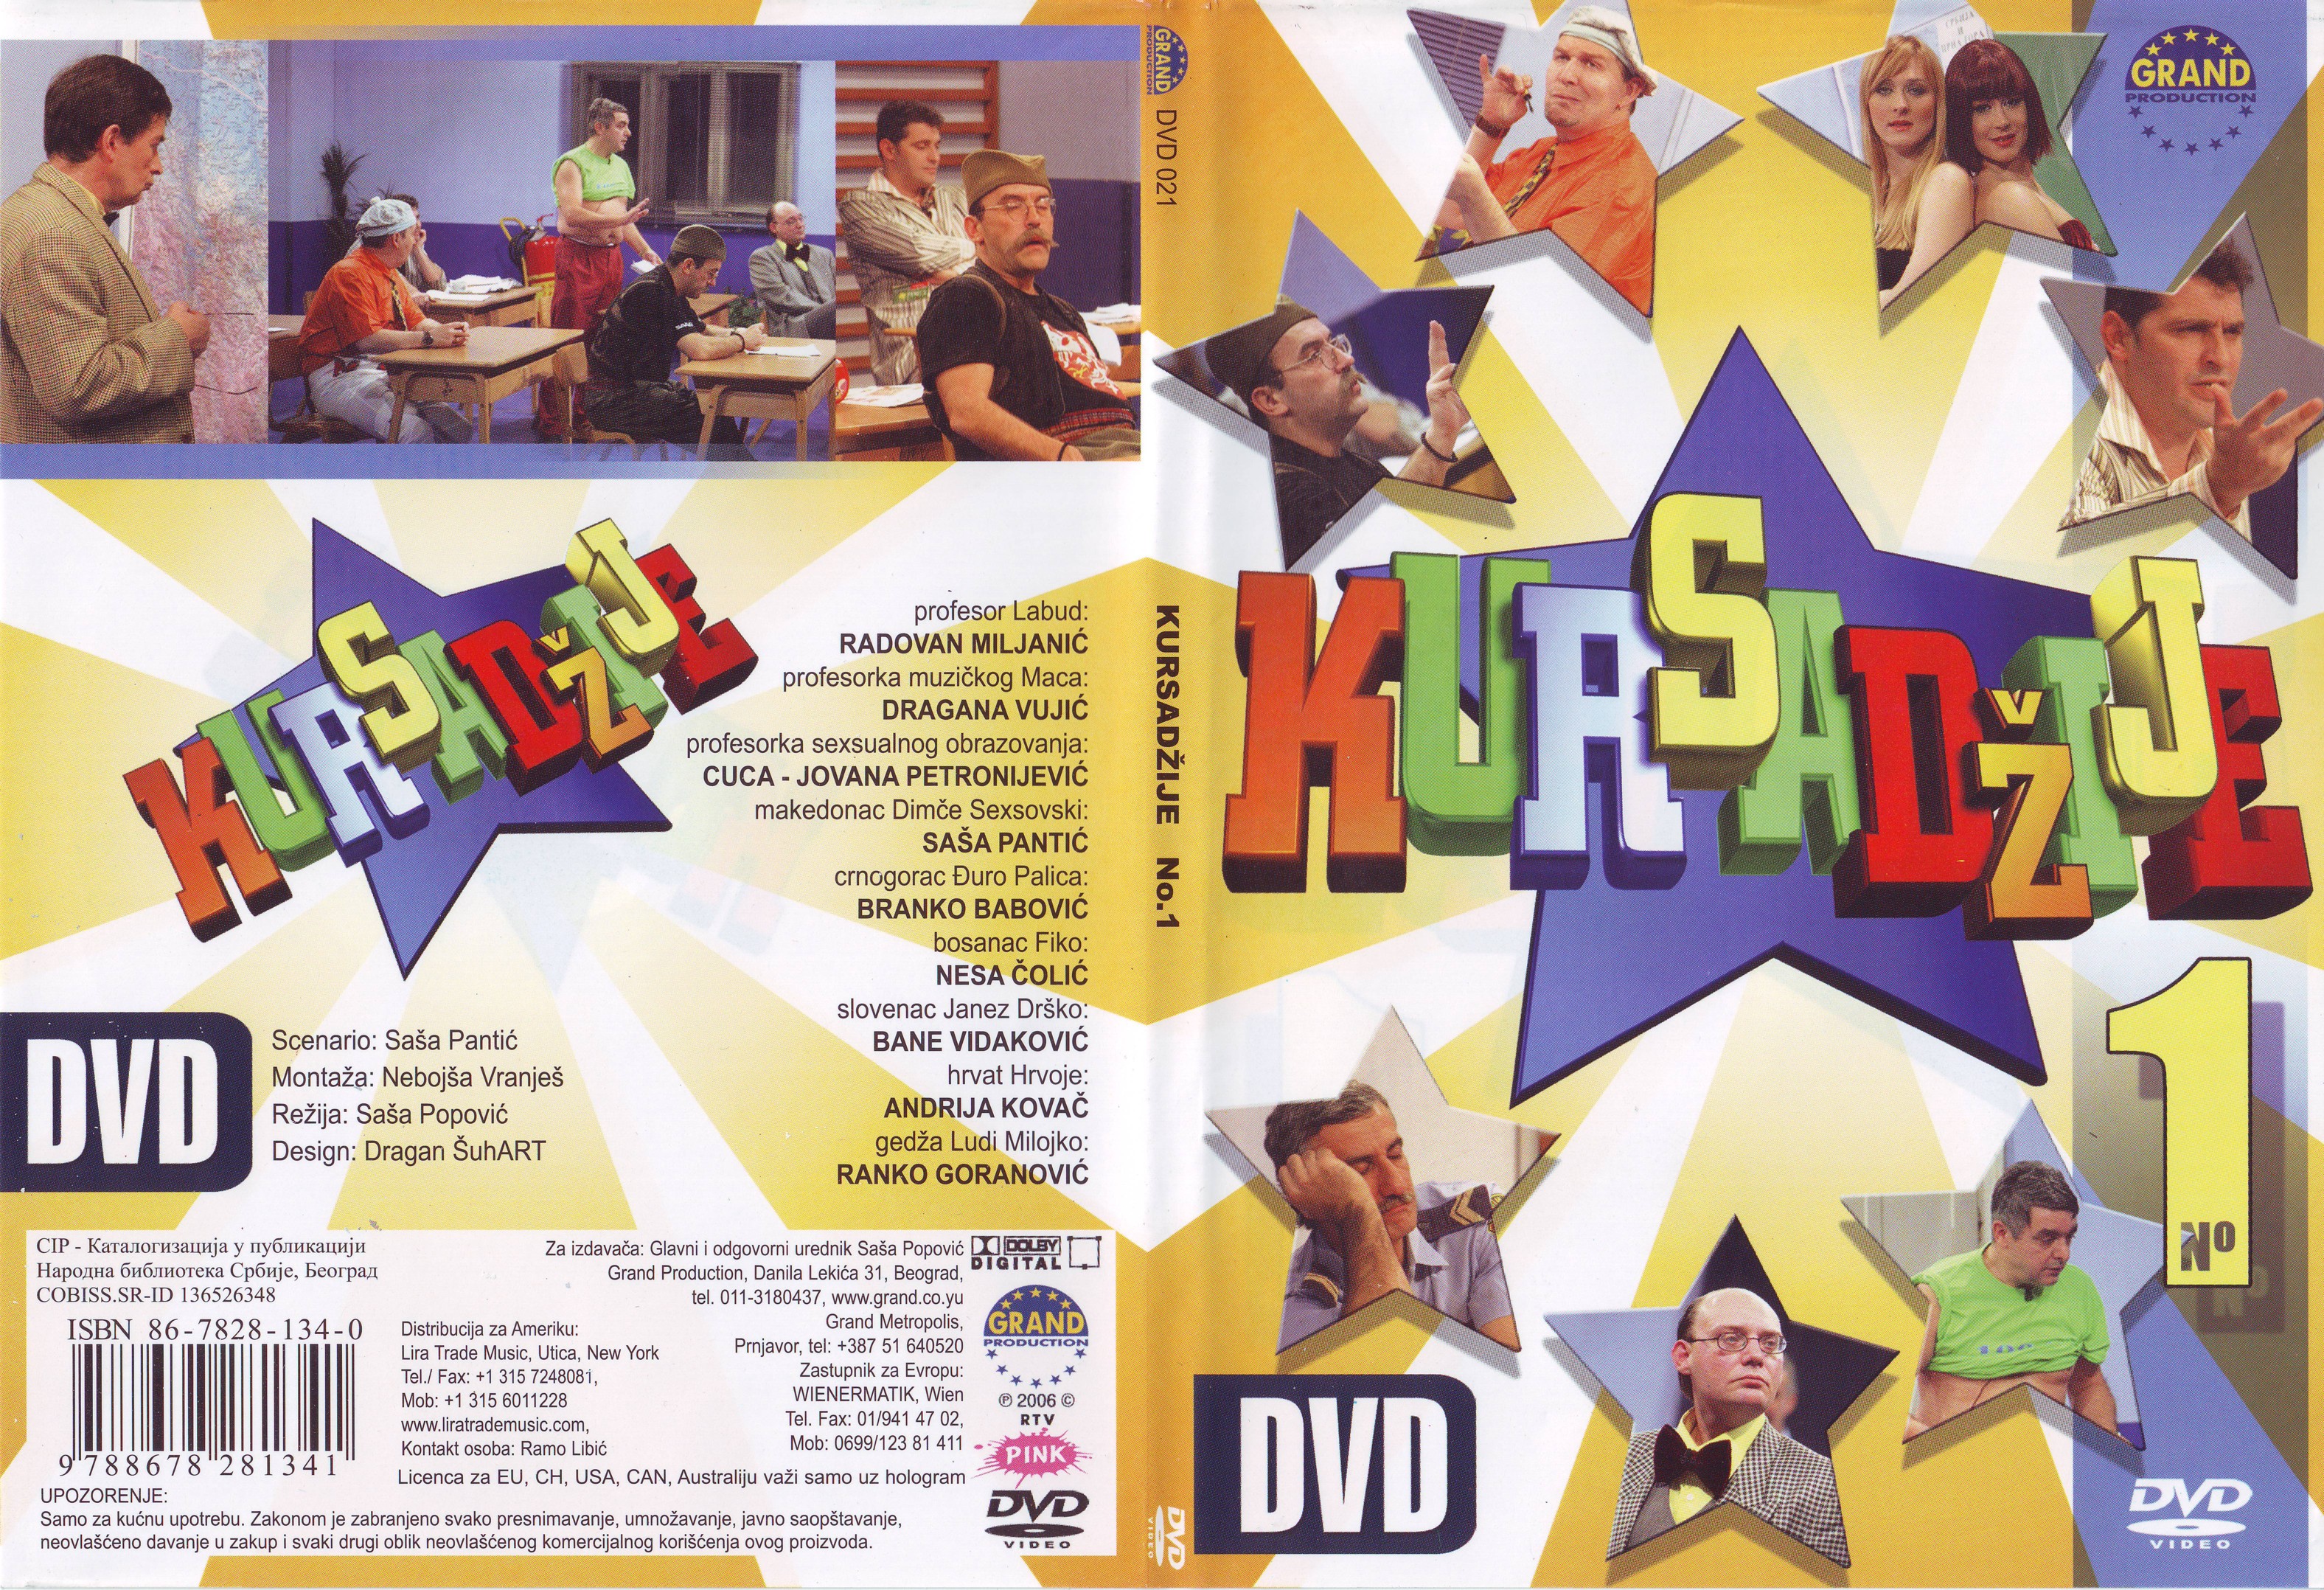 Click to view full size image -  DVD Cover - 0-9 - DVD - KURSADZIJE - DVD - KURSADZIJE.jpg